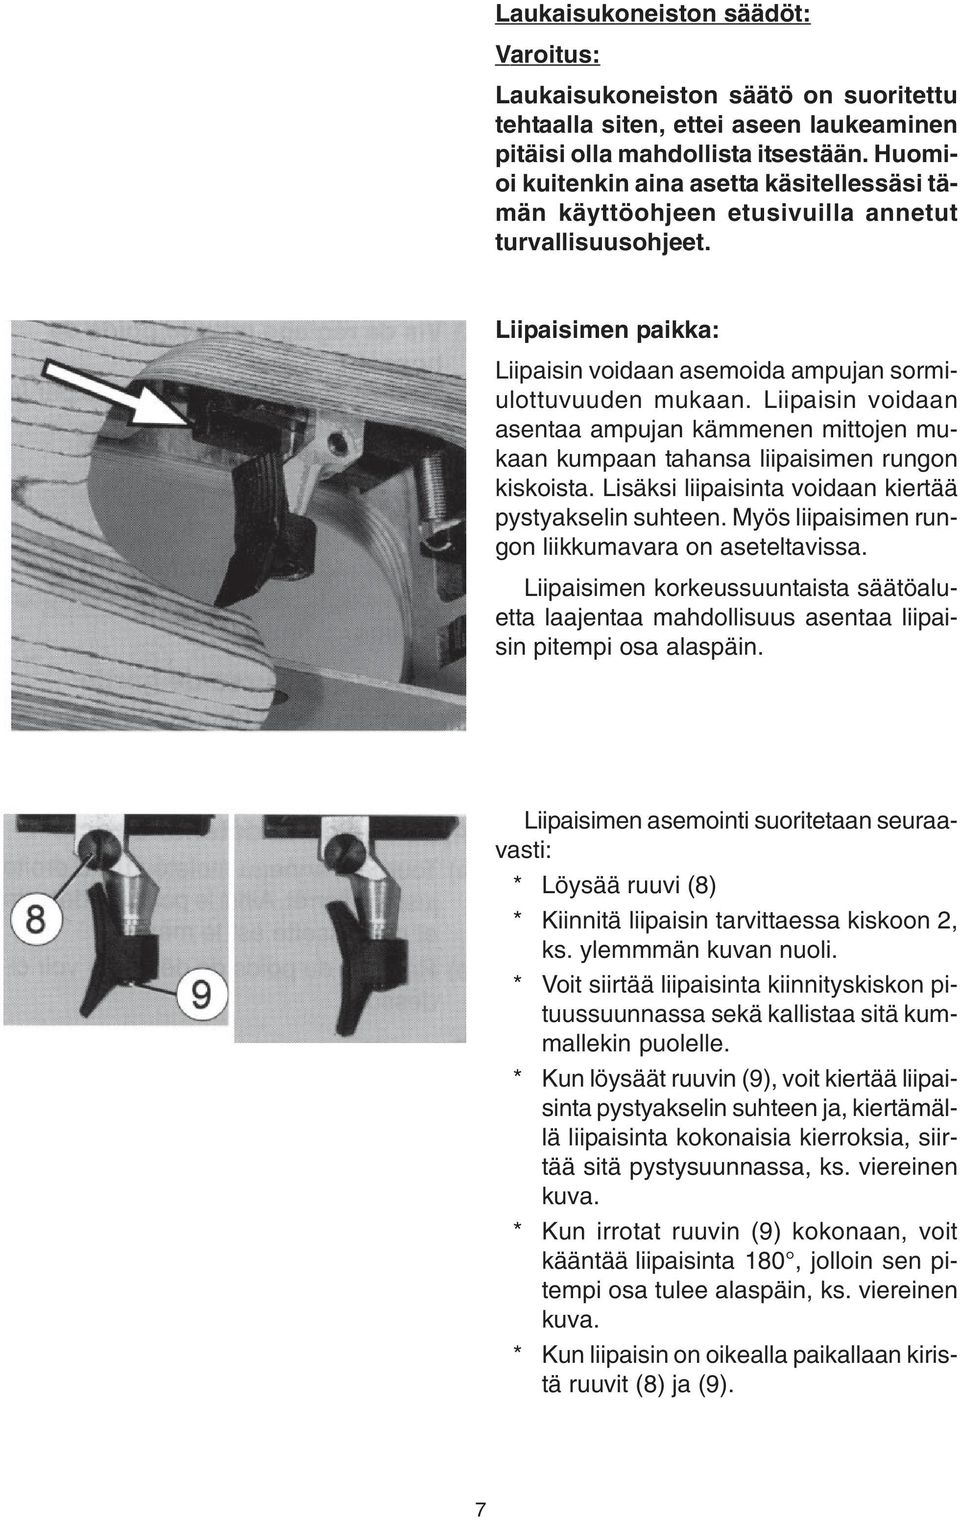 Liipaisin voidaan asentaa ampujan kämmenen mittojen mukaan kumpaan tahansa liipaisimen rungon kiskoista. Lisäksi liipaisinta voidaan kiertää pystyakselin suhteen.